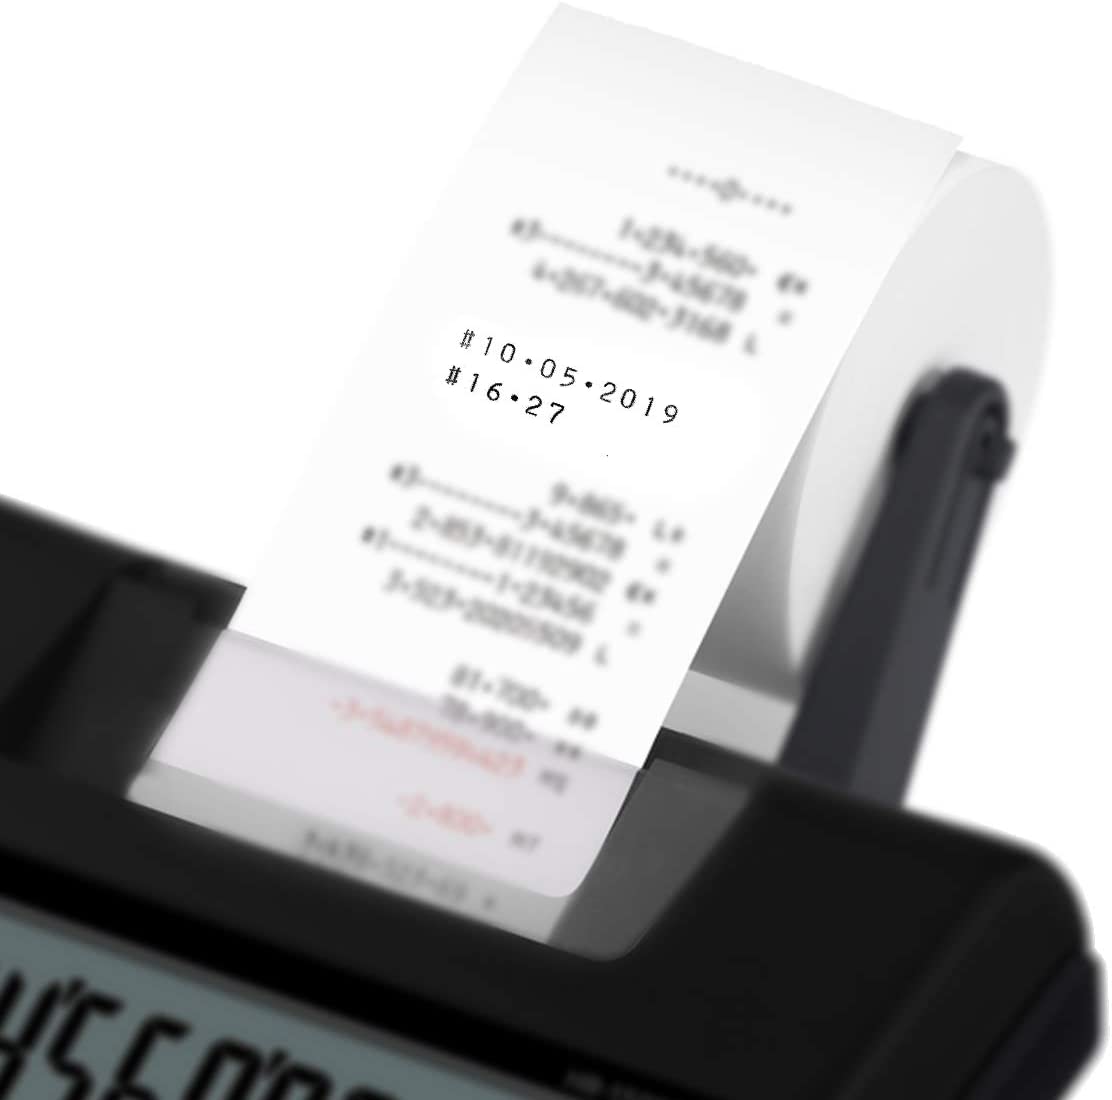 Casio HR-200TEC - Calculatrice imprimante - LCD - 12 chiffres -  alimentation batterie Pas Cher